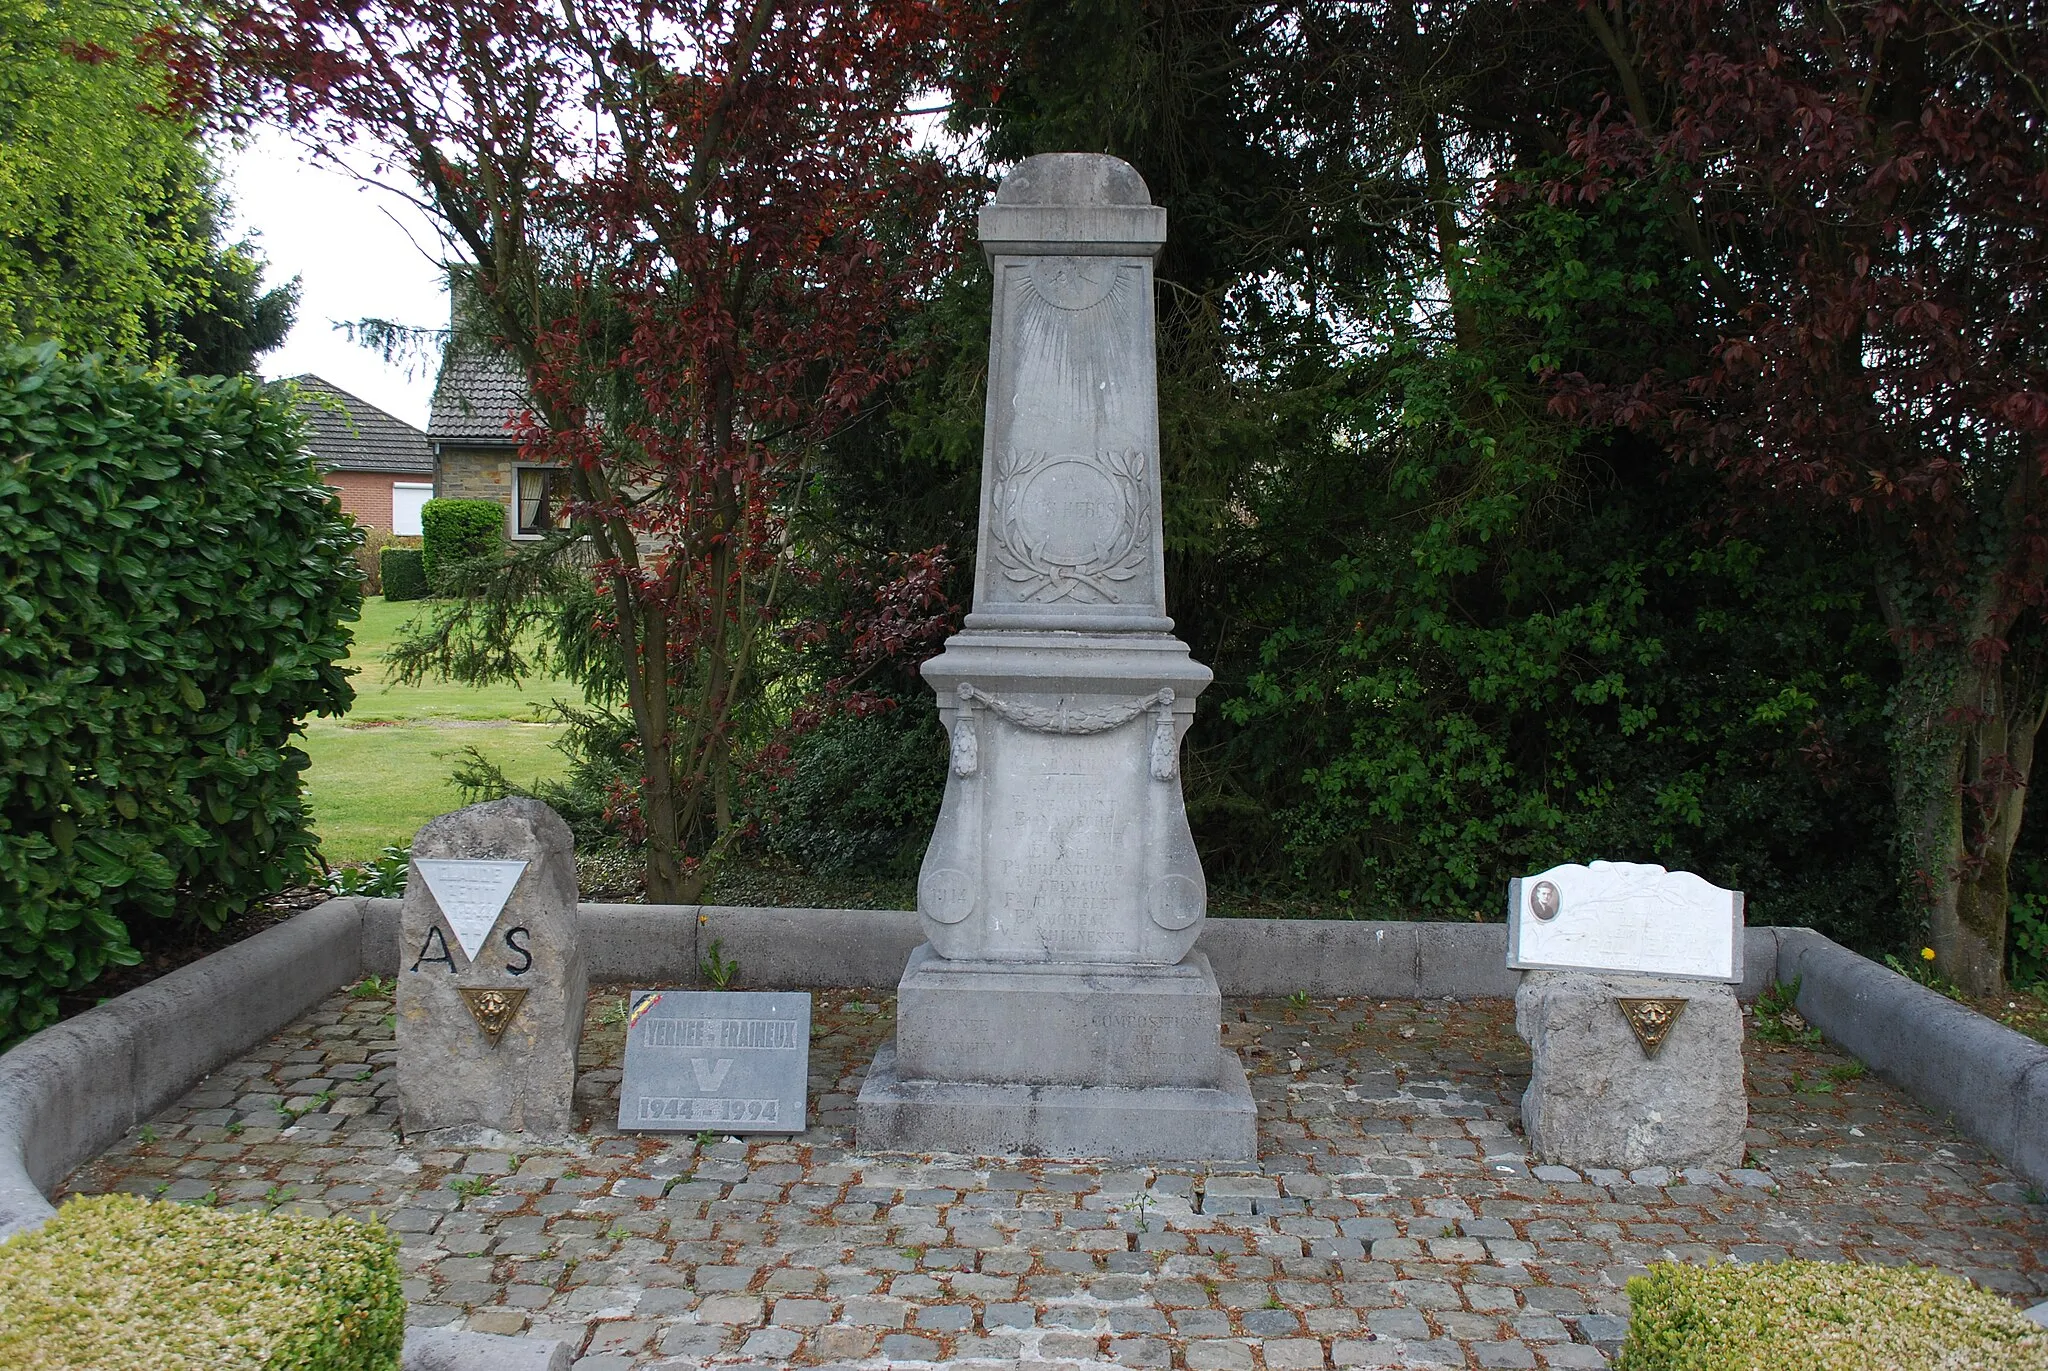 Photo showing: Vue de Fraineux, dans le commune de Nandrin (province de Liège, en Belgique).